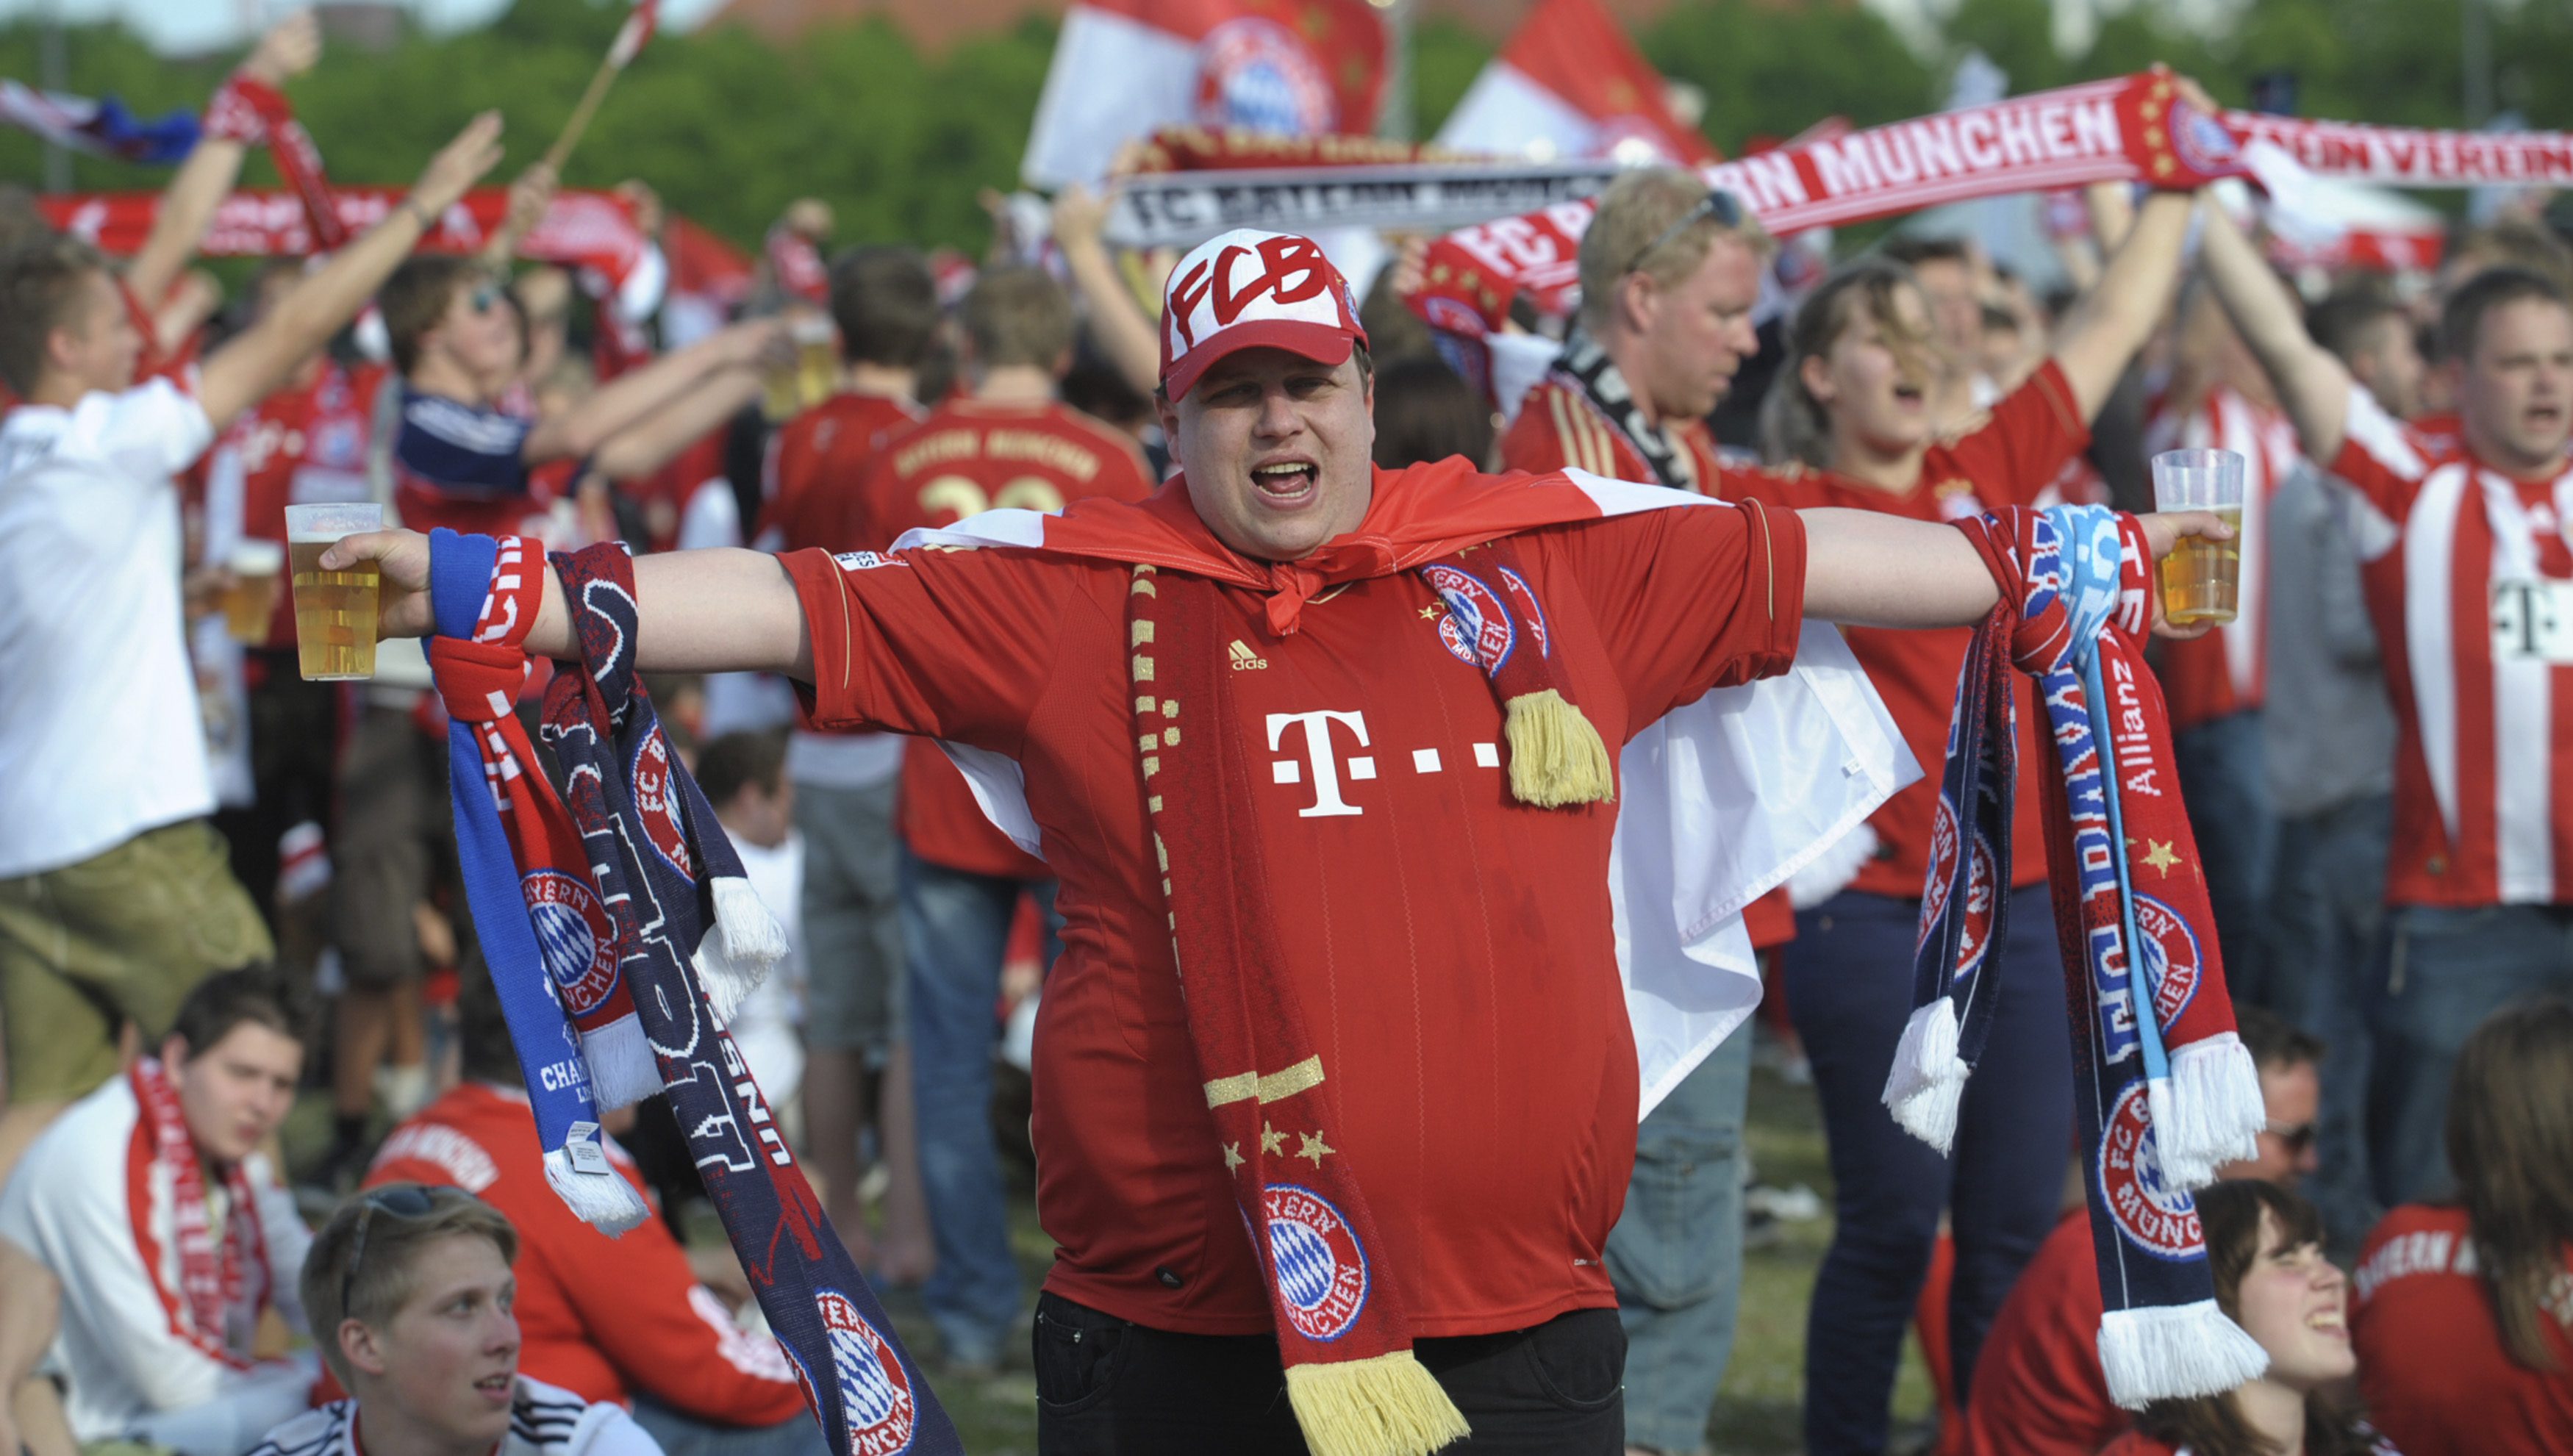 Εκατοντάδες χιλιάδες που δεν μπόρεσαν να προμηθευτούν εισιτήριο θα δουν τον τελικό σε γιγαντοοθόνες που έχουν στηθεί στο Μόναχο, ΦΩΤΟ REUTERS